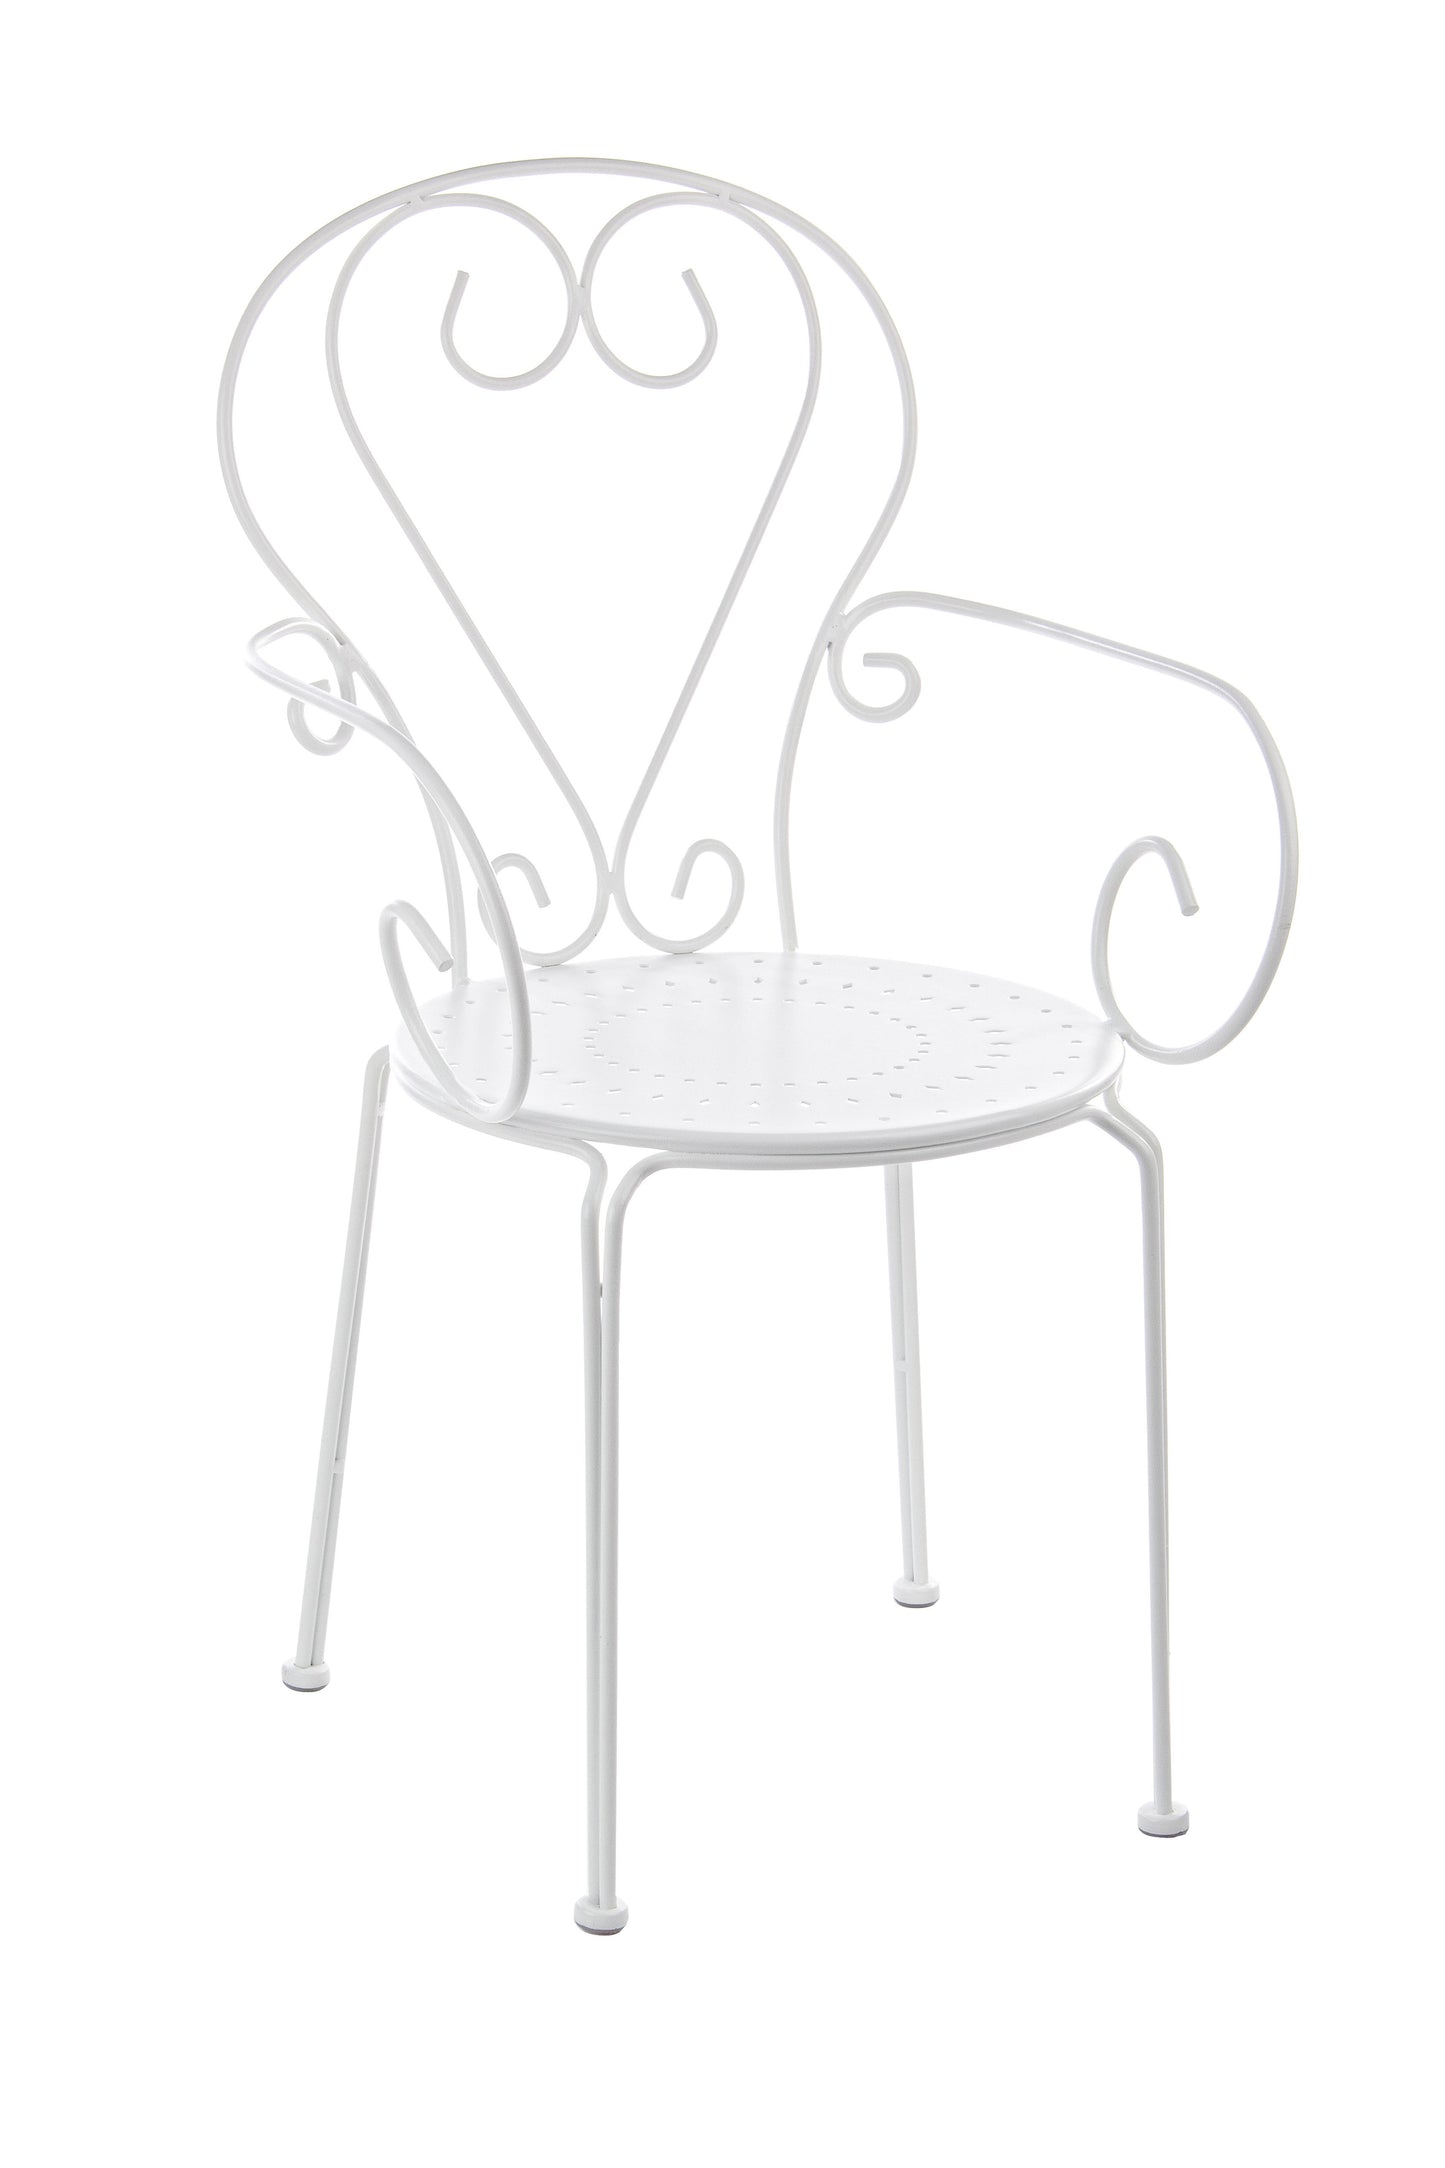 Sedie poltroncine da esterno in stile shabby chic in ferro verniciato, bianco - SET DI 4 SEDIE - SCONTO 20% - lapagoda.net